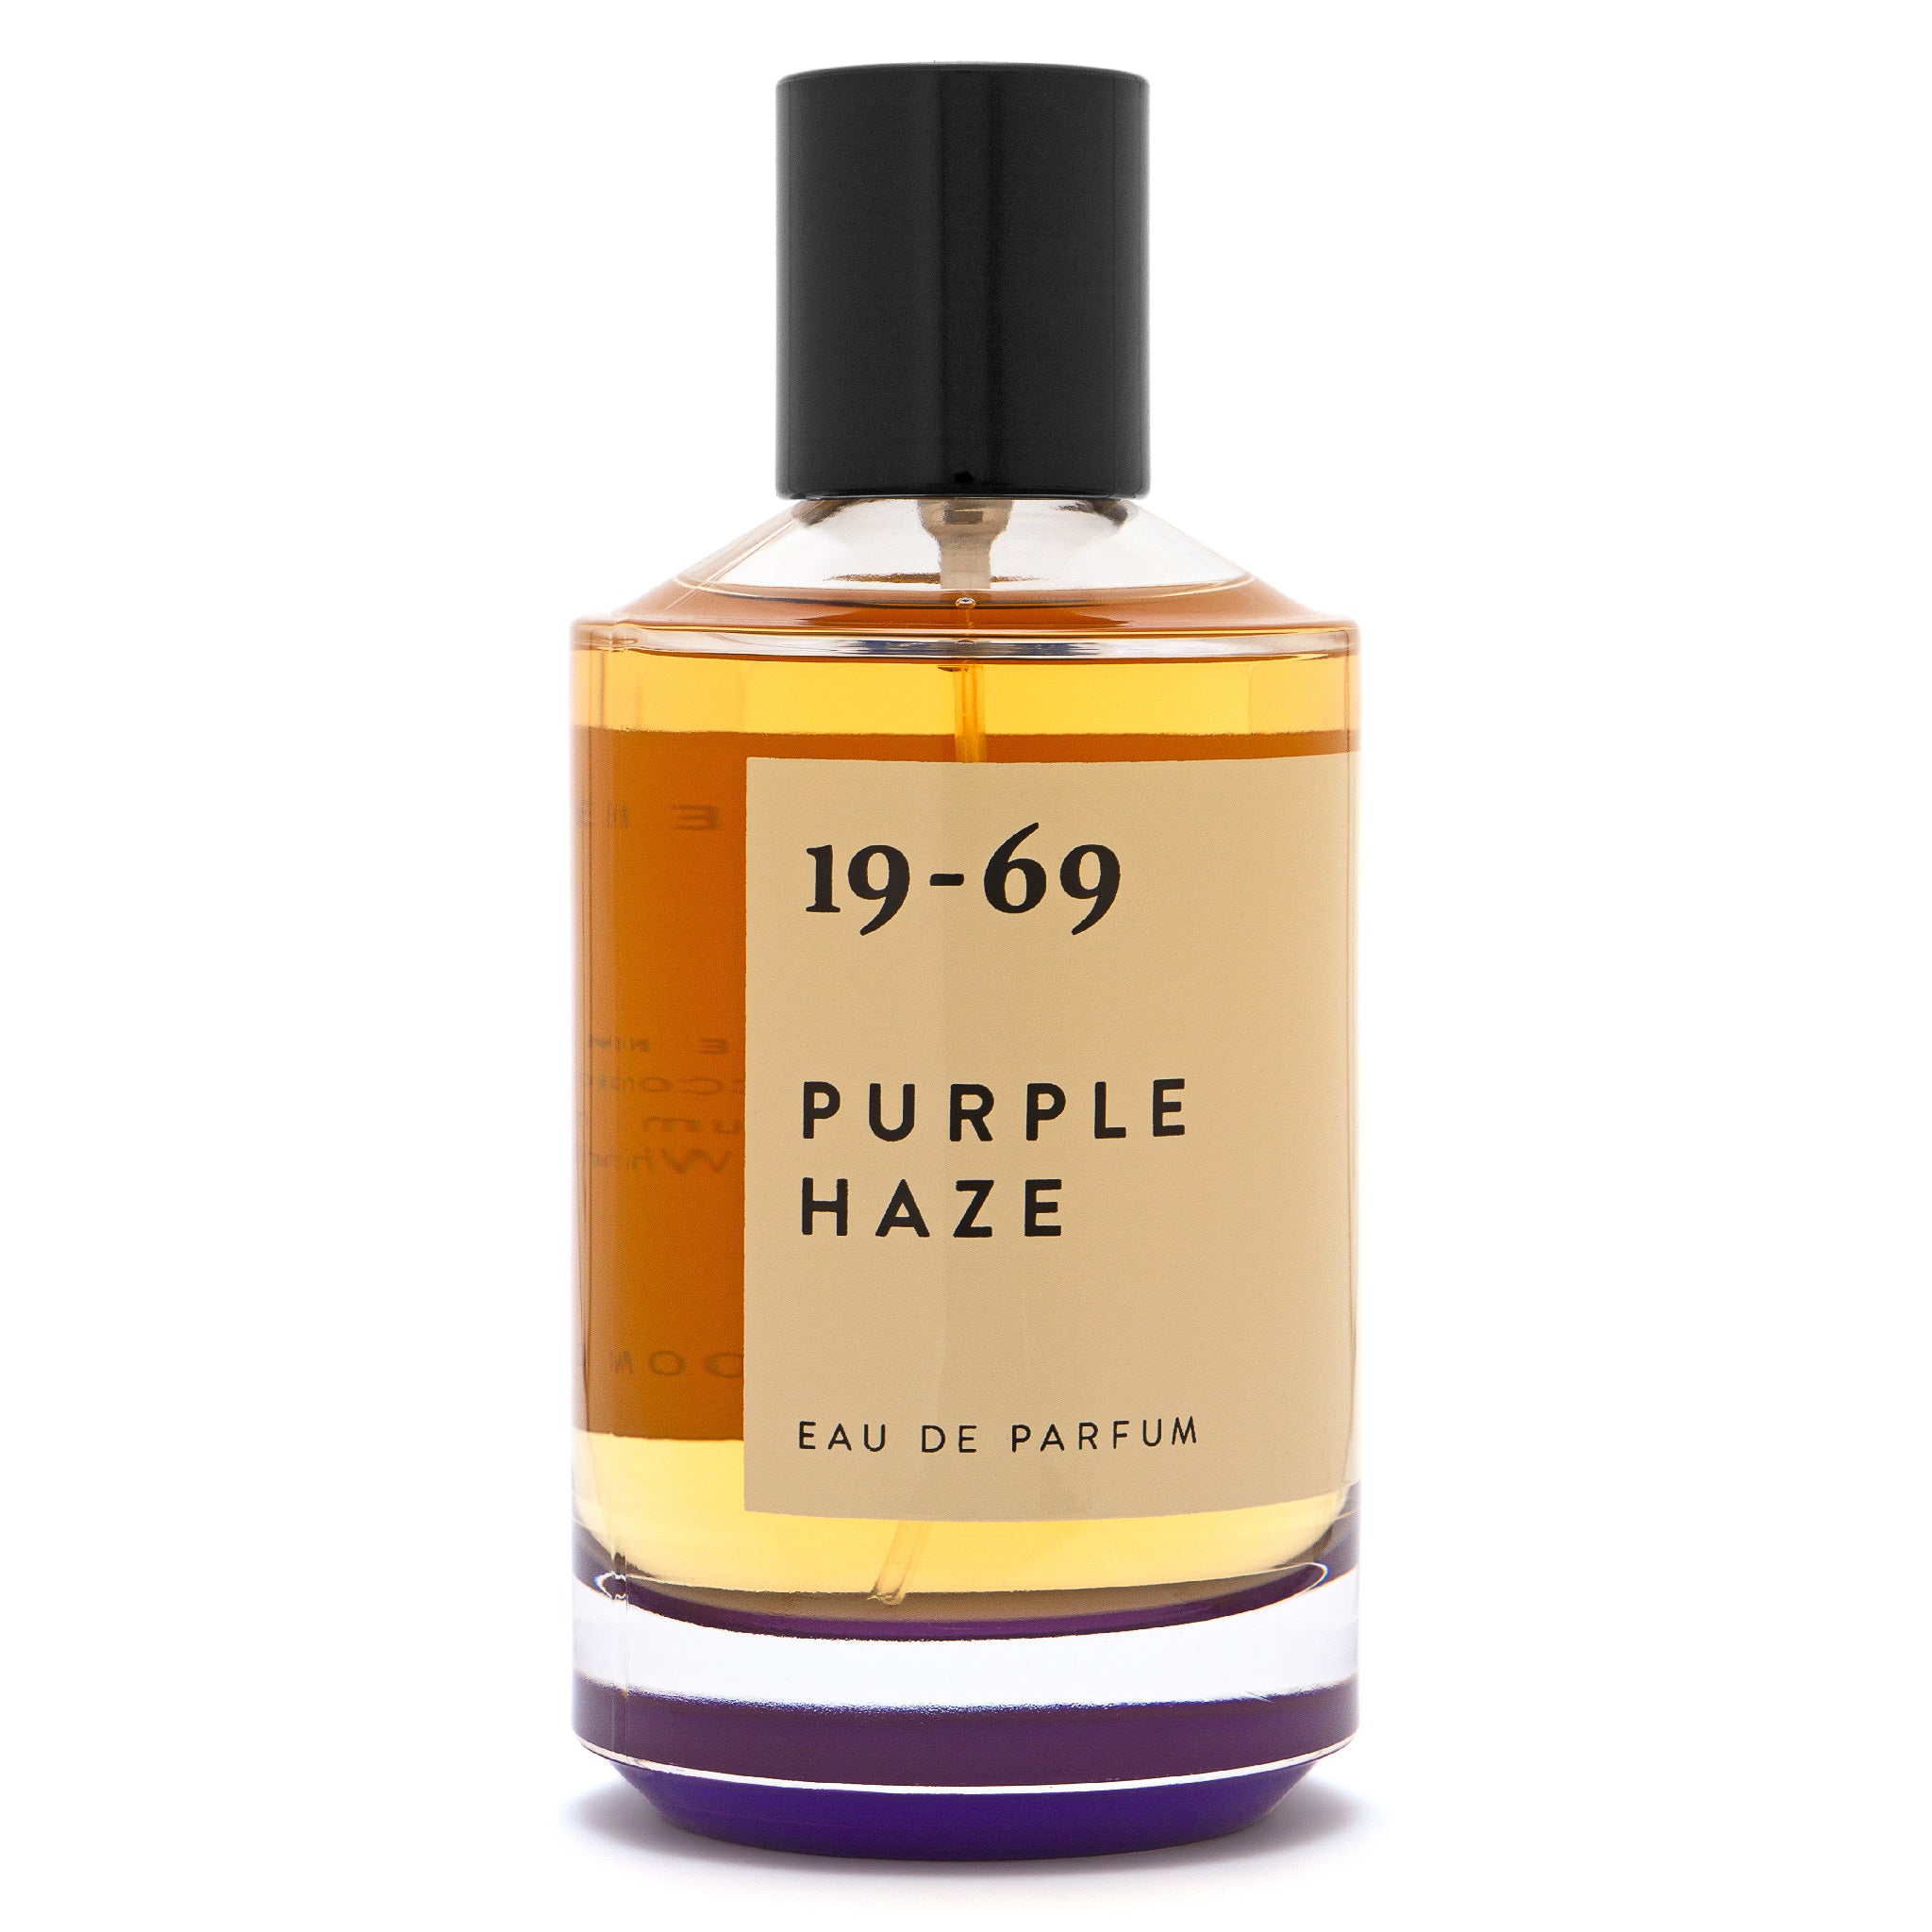 Purple Haze Eau de Parfum - 19-69